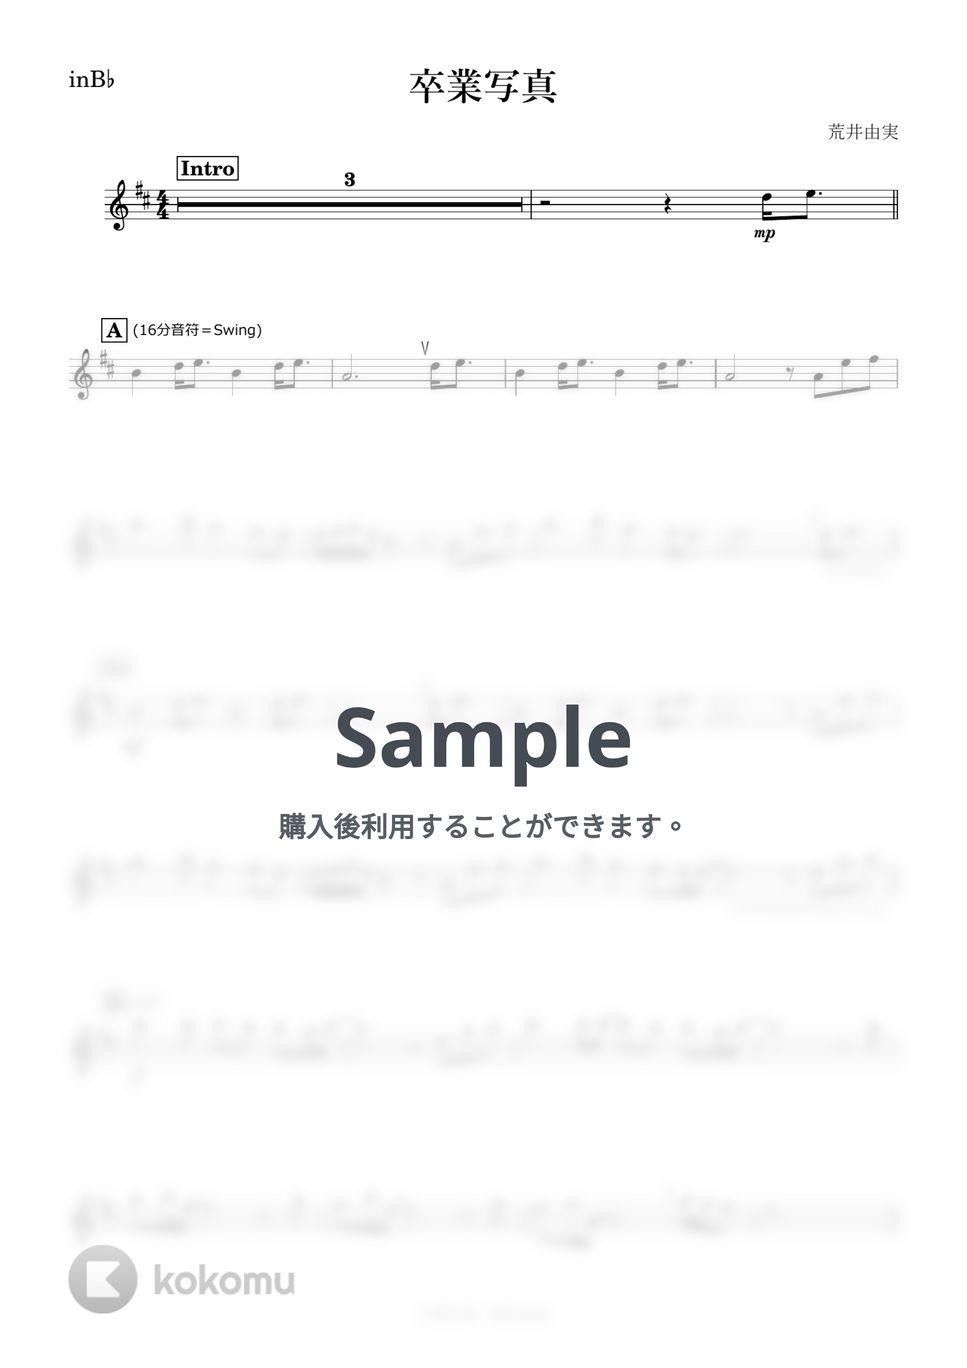 松任谷由実 - 卒業写真 (B♭) by kanamusic